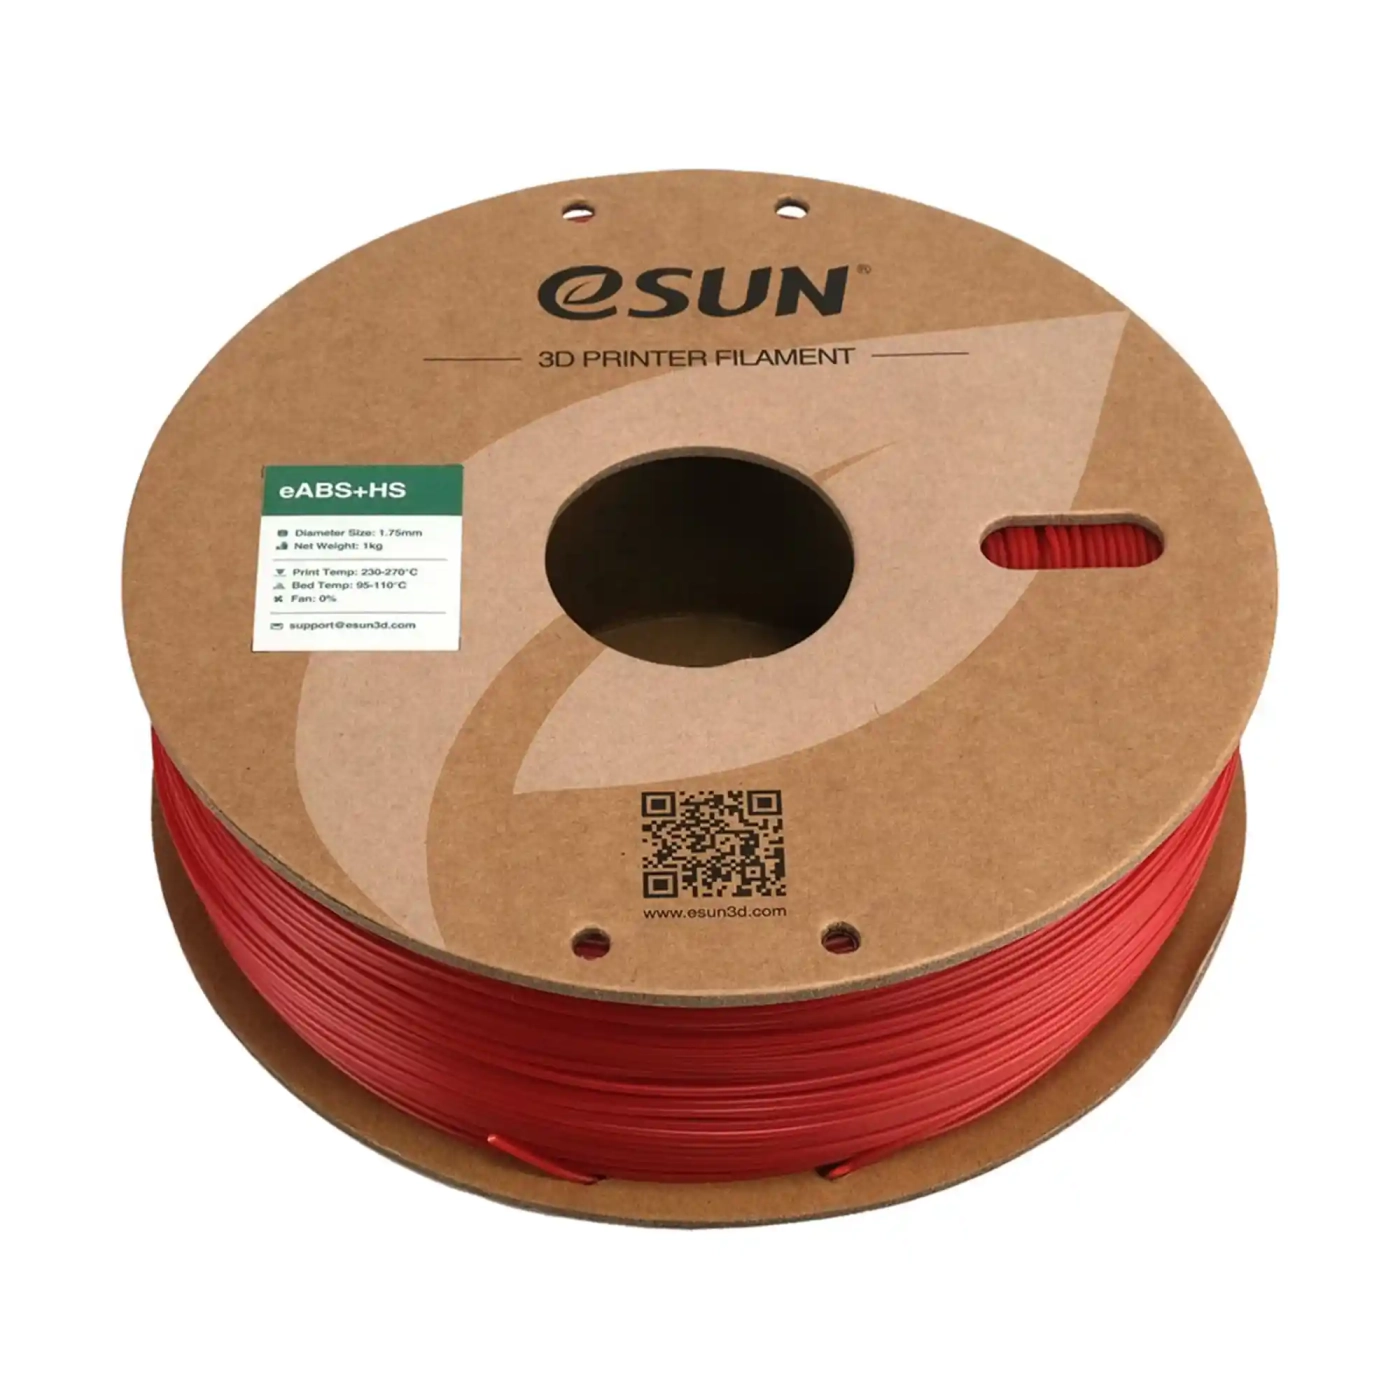 Купить eABS+HS Filament (пластик) для 3D принтера Esun 1кг, 1.75мм, пожарно-красный (eABS+HS-175FR1) - фото 3